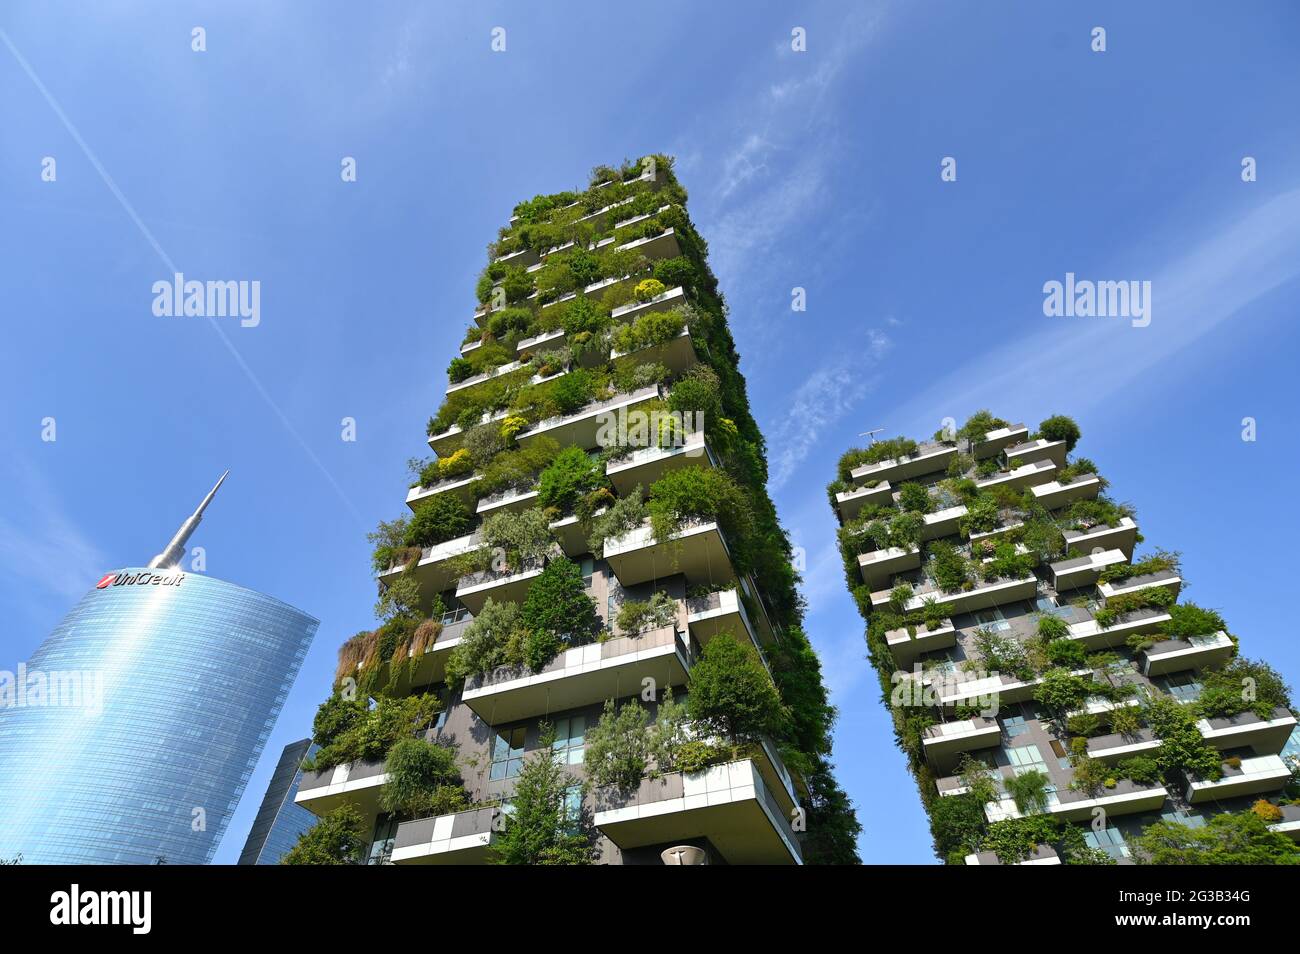 Außenansicht der luxuriösen Wohnhochhäuser Bosco Verticale im Stadtteil Porta Nuova in Mailand Italien Stockfoto